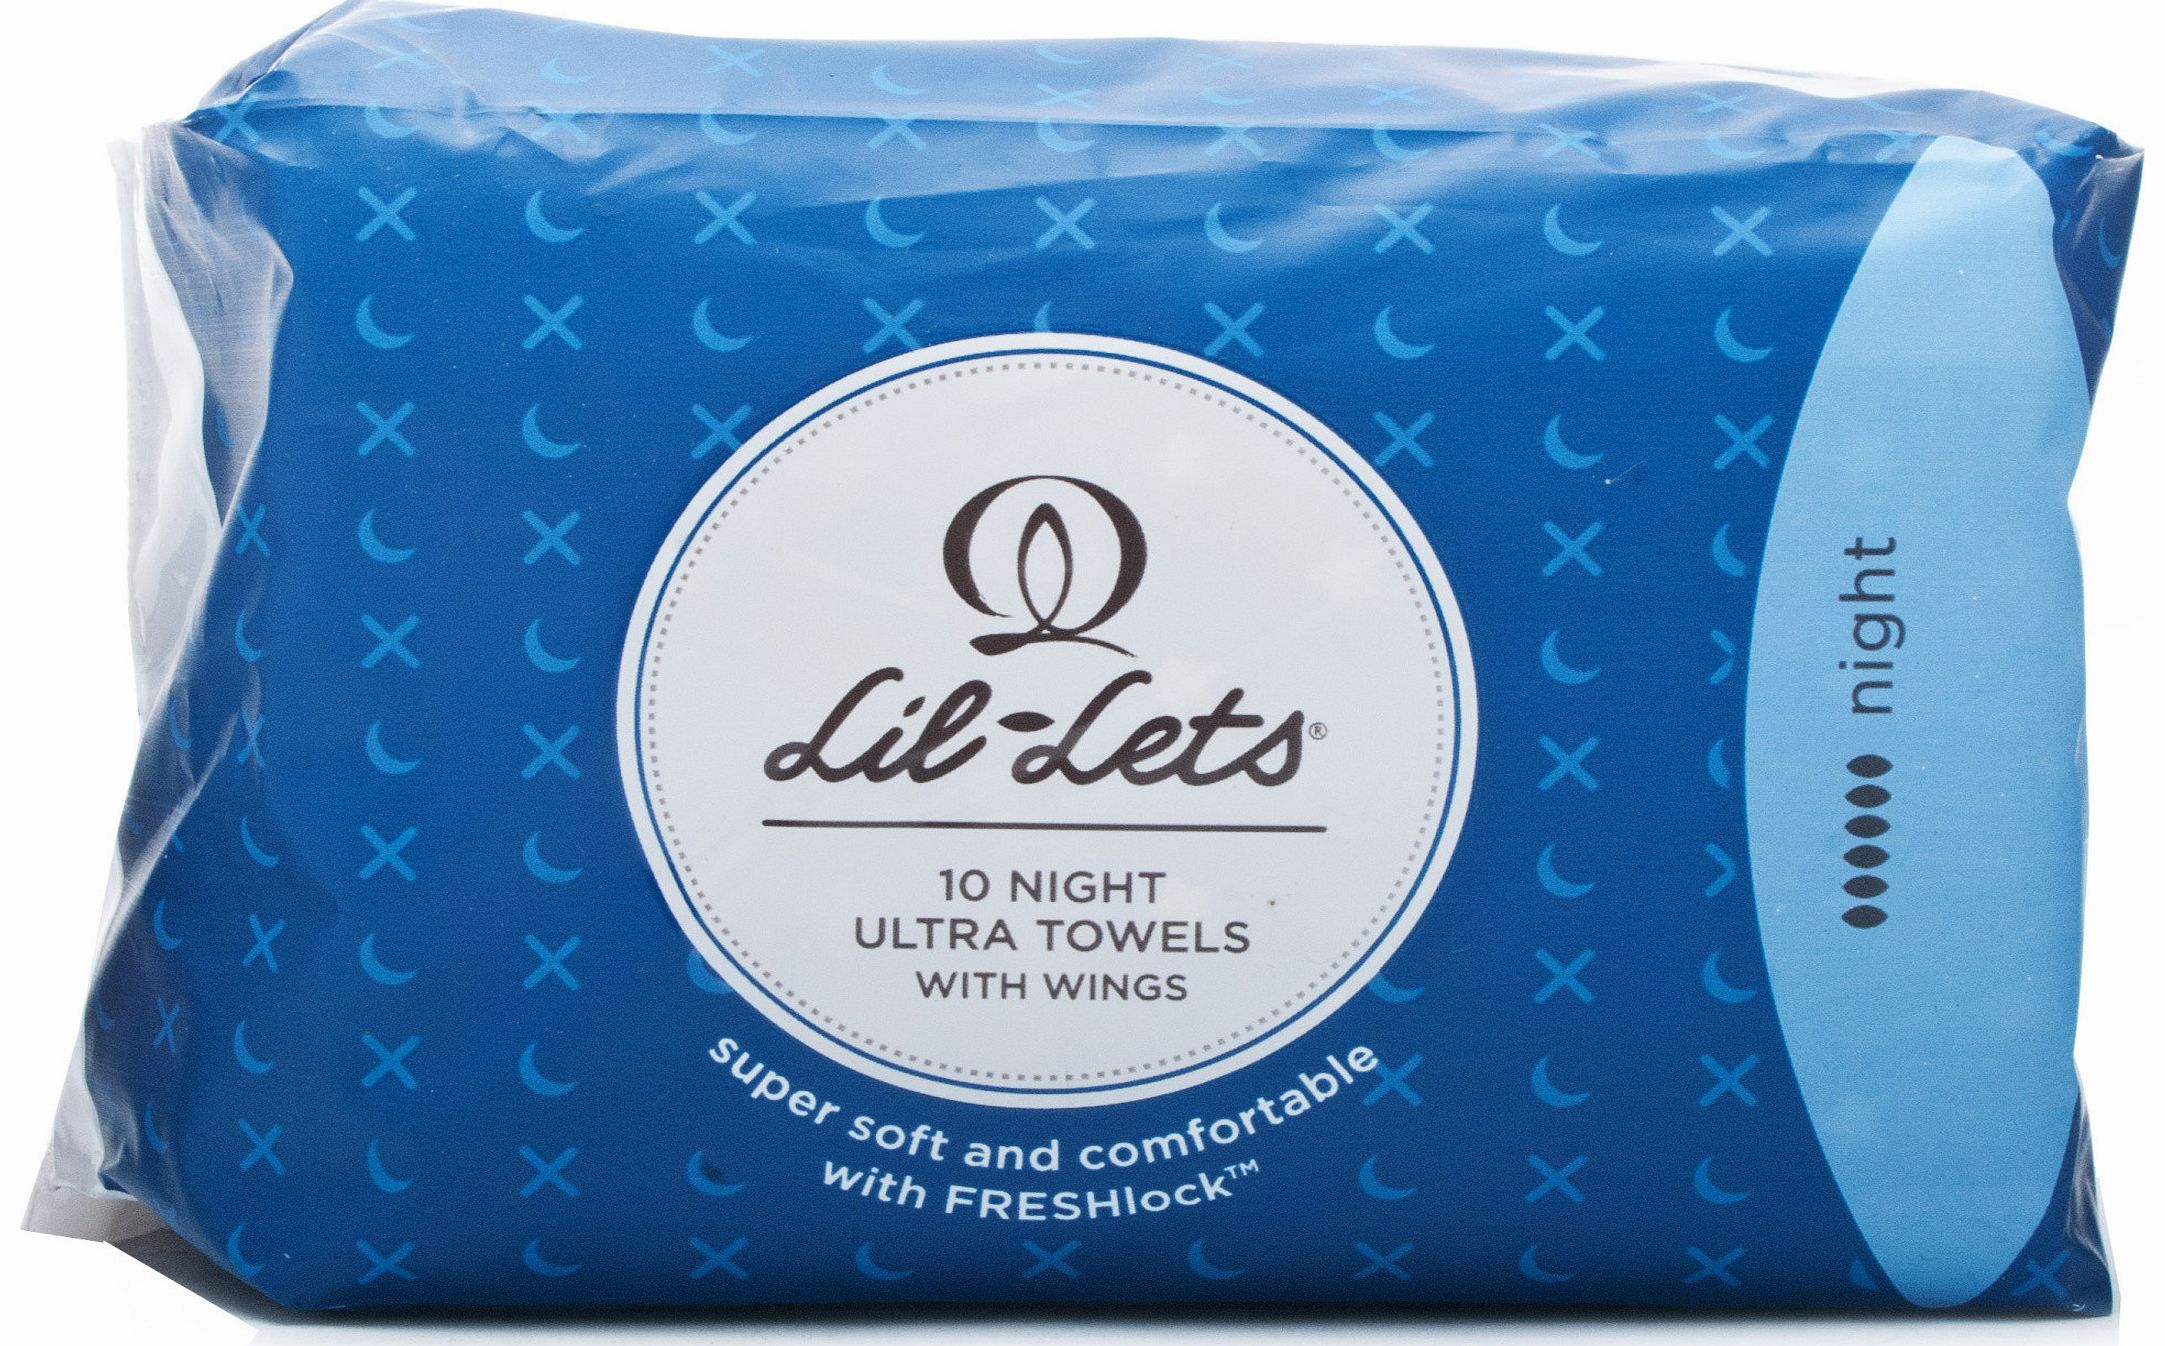 Fresh Lock Ultra Towels - Night